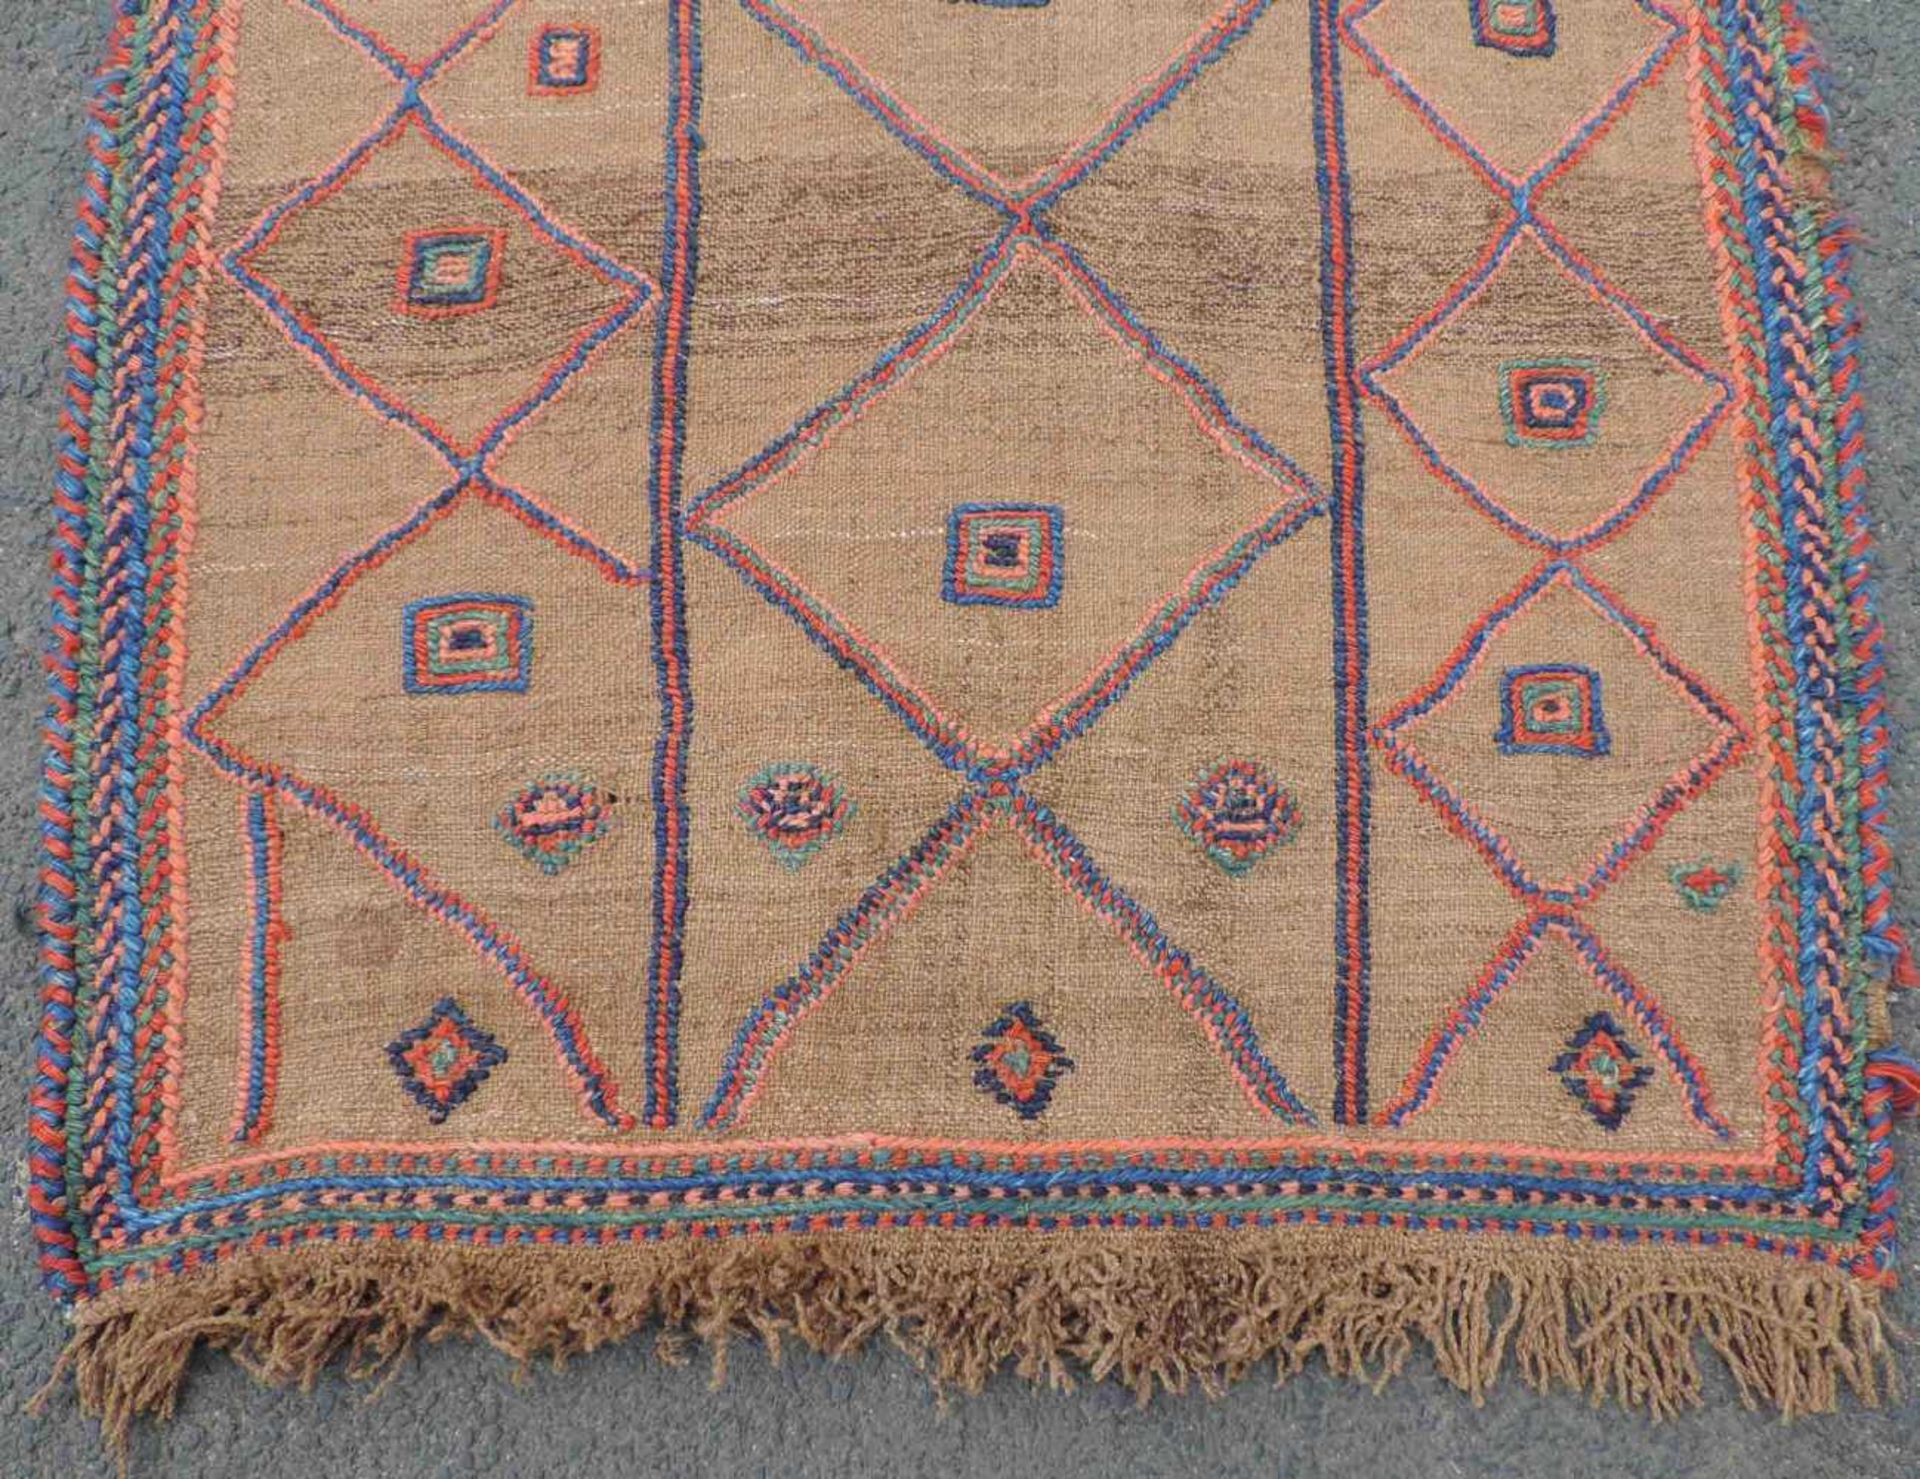 Turkoman kilim tribal carpet. Turkmenistan / Afghanistan. Antique, around 1900. - Bild 2 aus 4